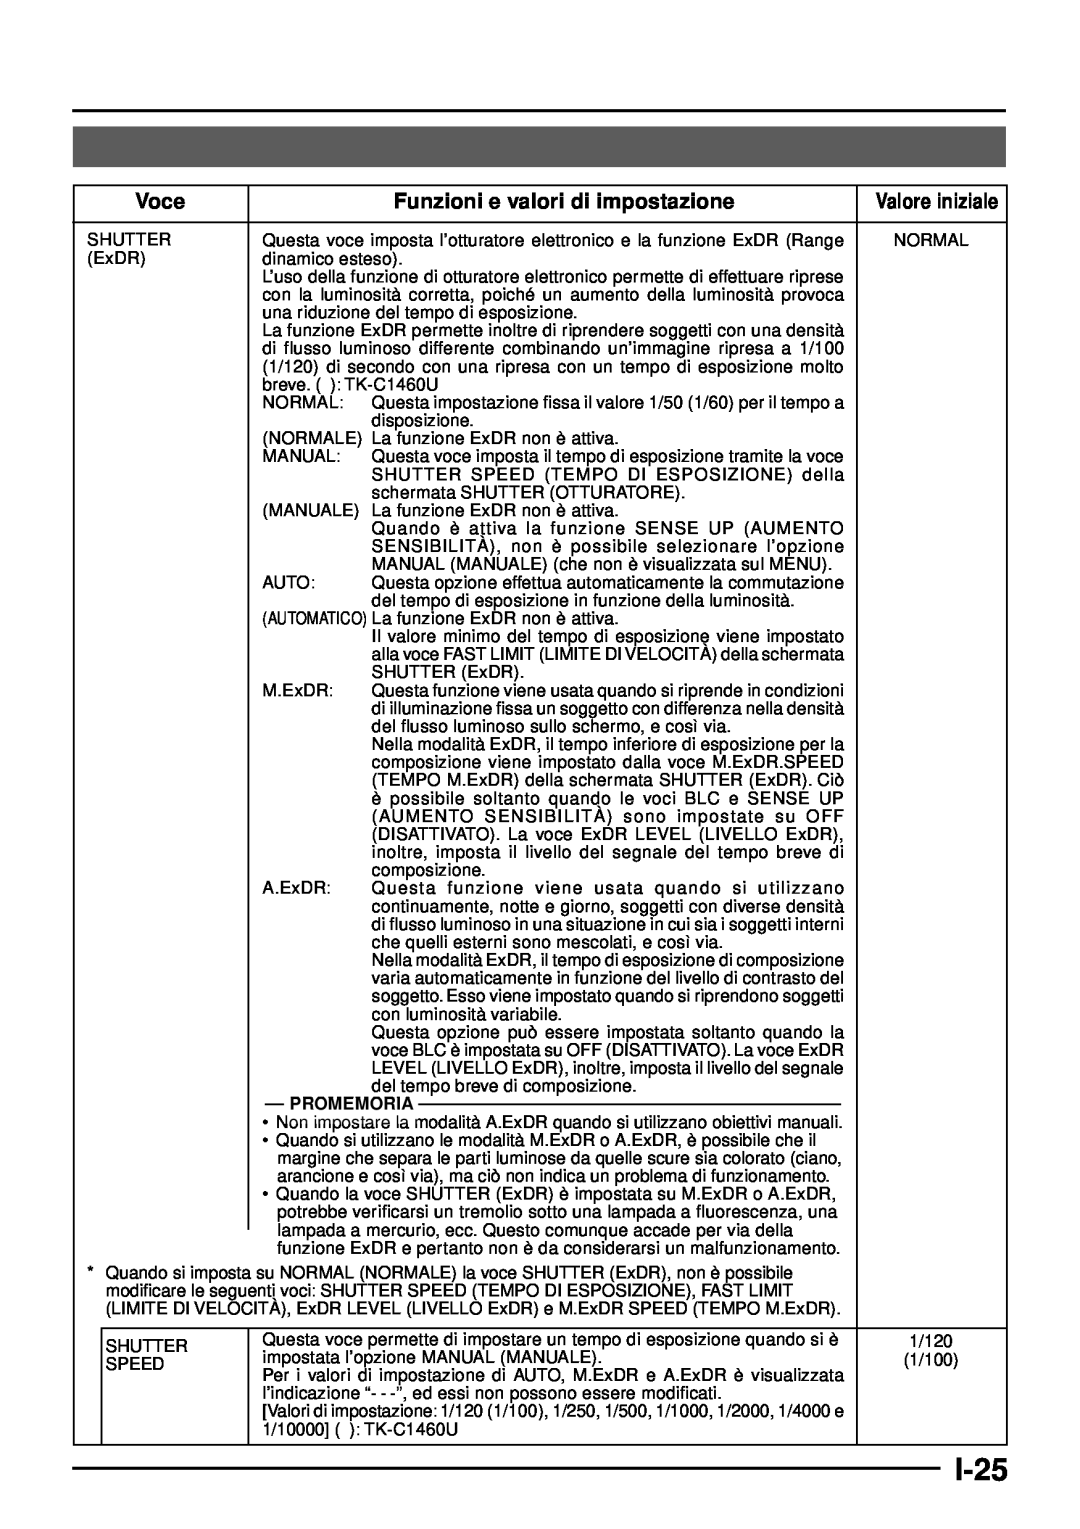 JVC TK-C1460 manual I-25, Voce, Funzioni e valori di impostazione, Valore iniziale, Promemoria 